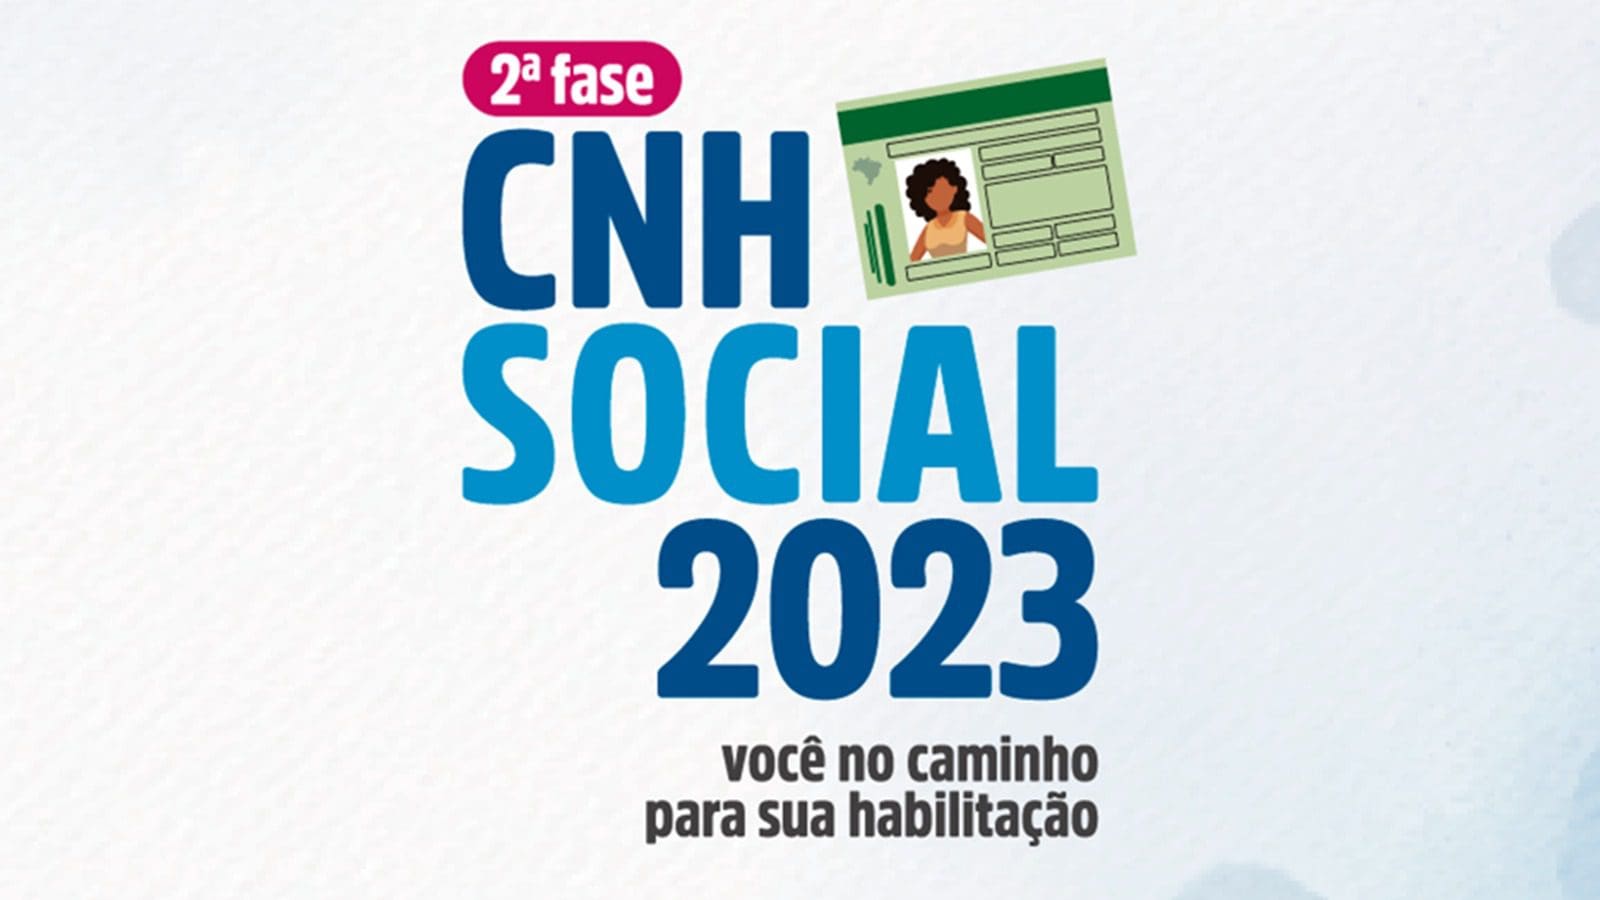 Confira se teu nome se encontra na lista de selecionados, além dos detalhes de como matricular de forma online e garantir a vaga CNH Social 2023